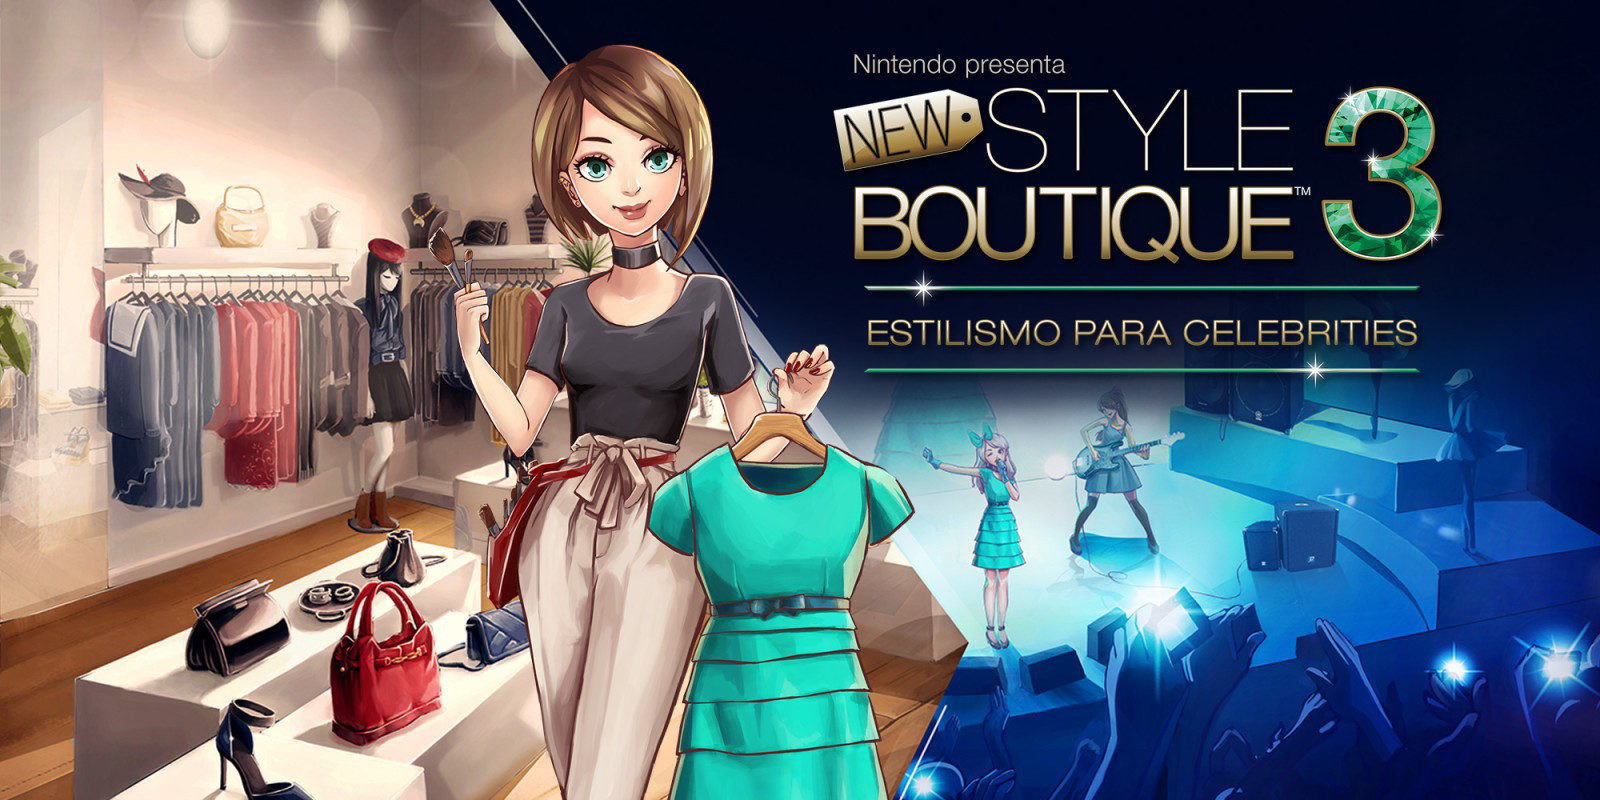 Análisis 'New Style Boutique 3 - Estilismo para celebrities': un juego dinámico para todas las edades